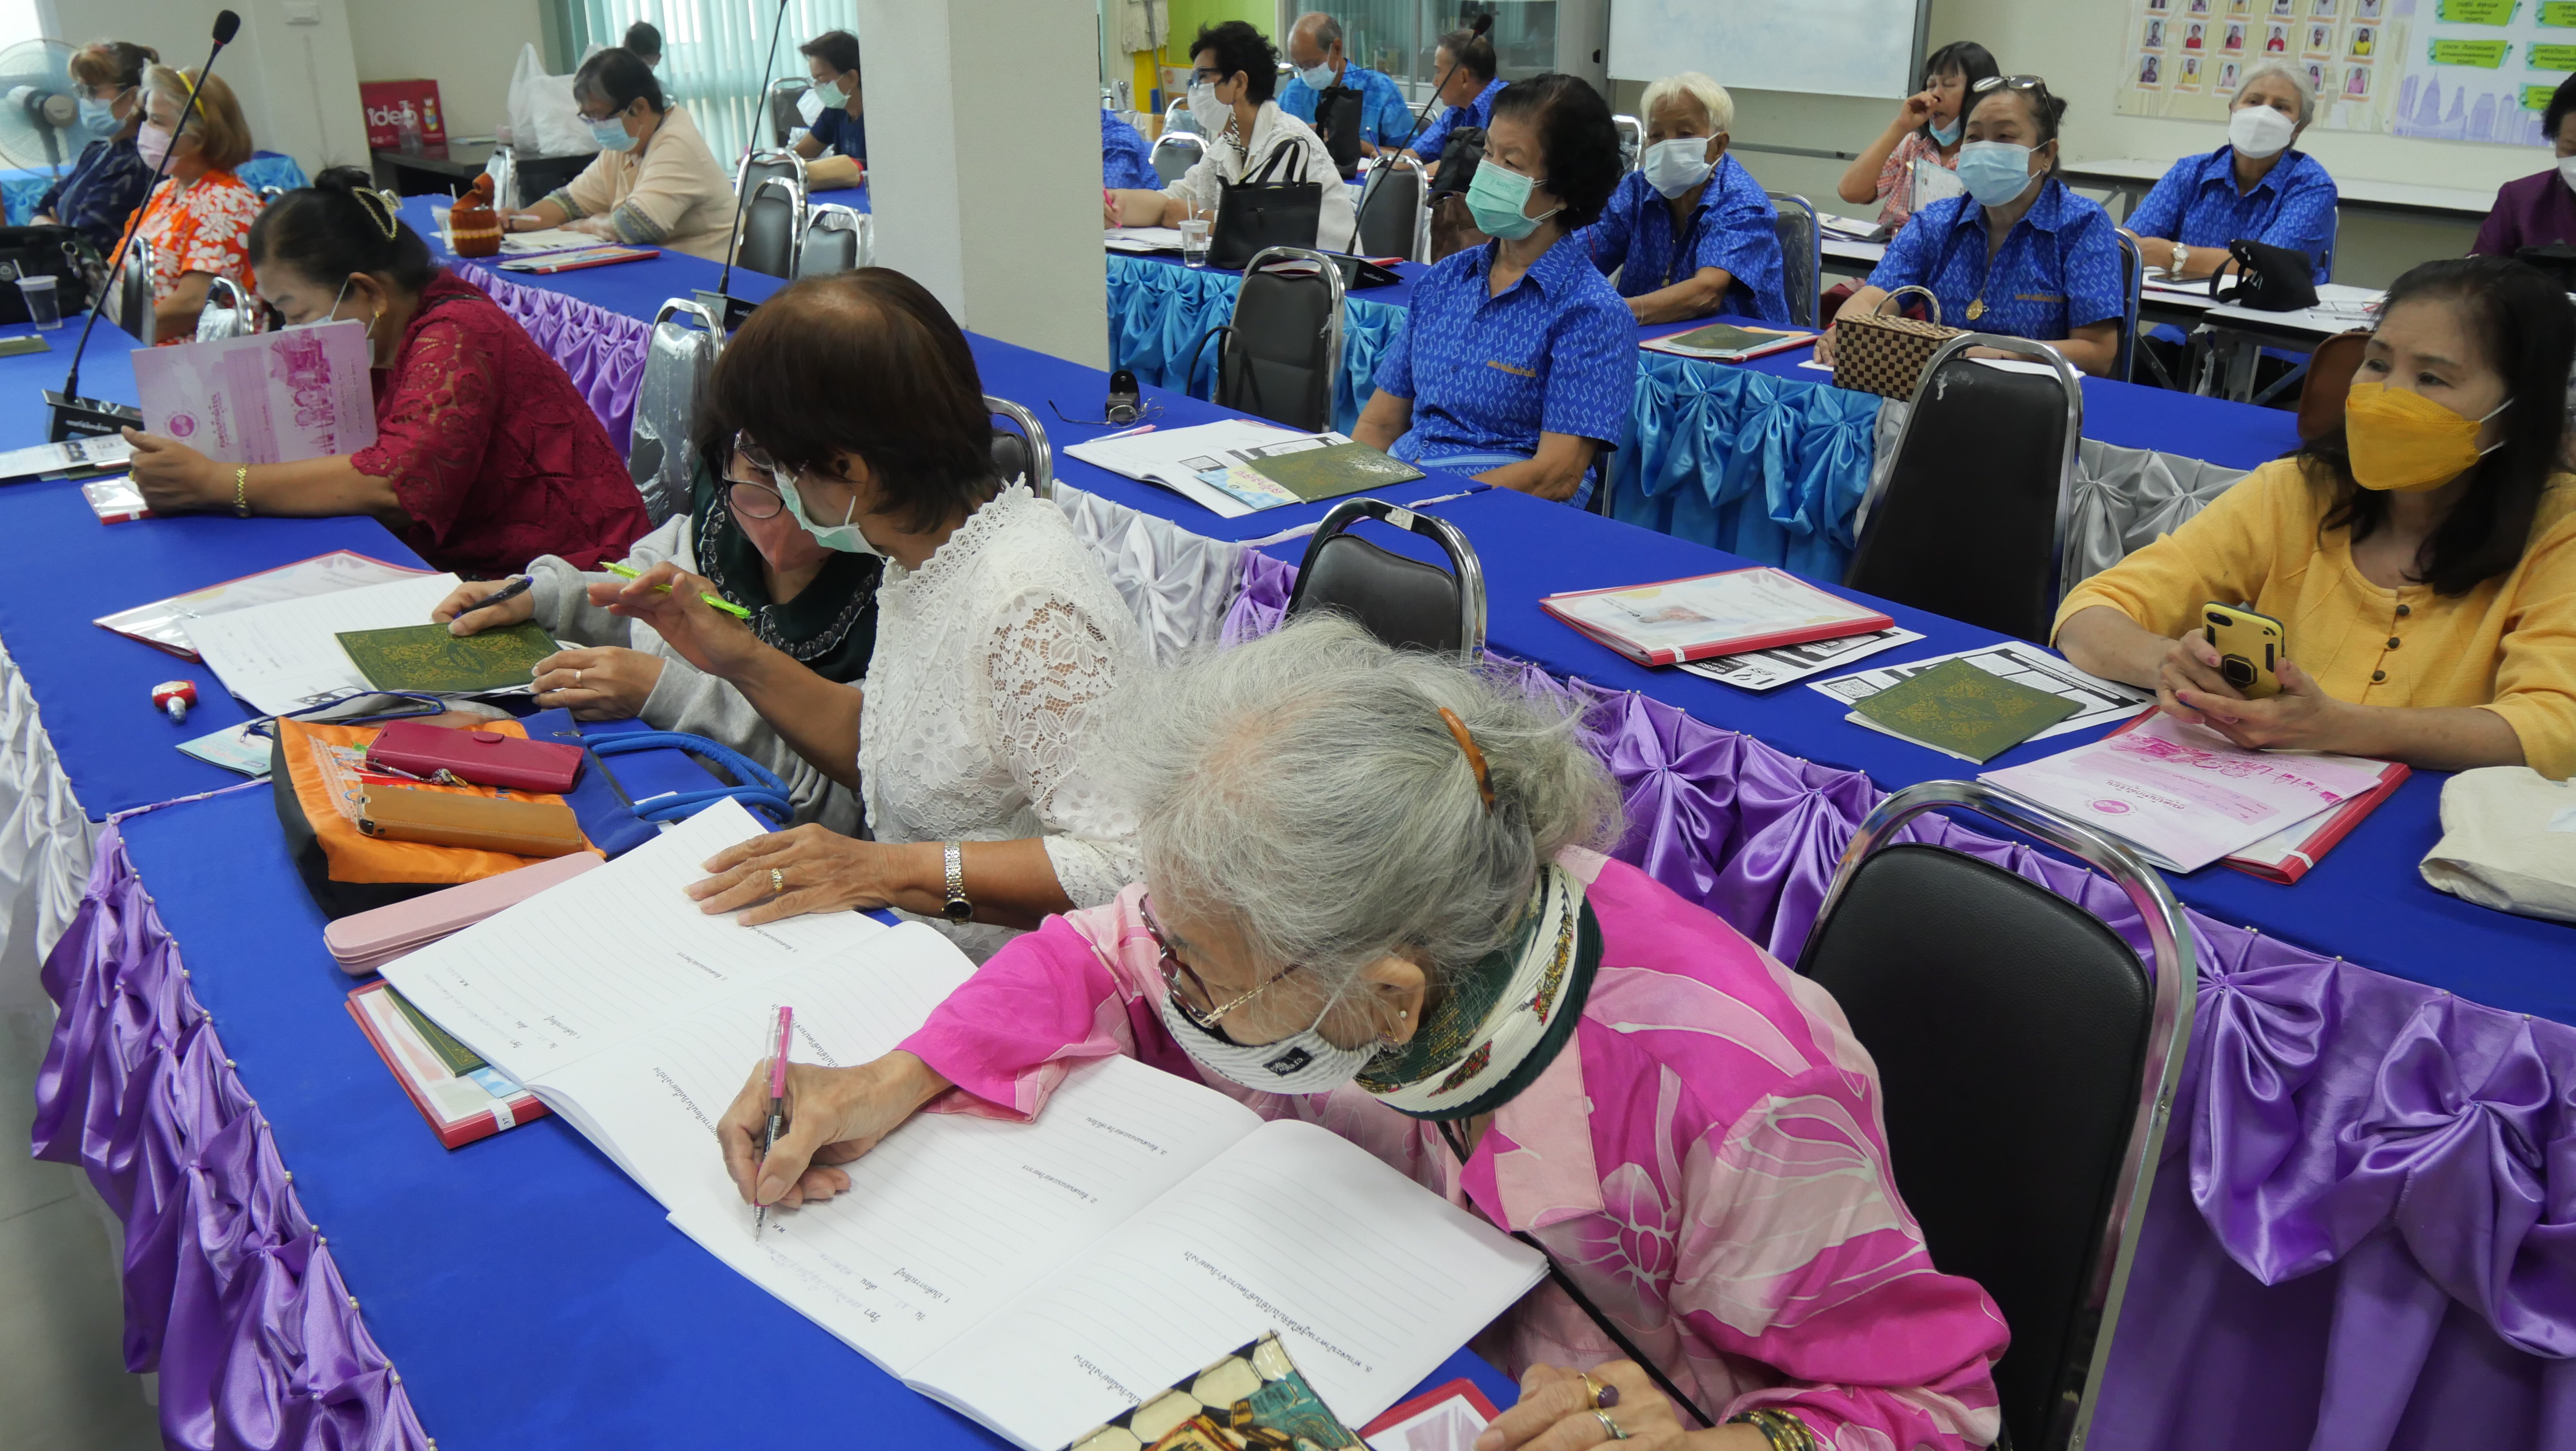 โครงการสถาบันสร้างสุข ผู้สูงวัย รุ่นที่ 2 ประจำปีงบประมาณ 2566  ครั้งที่ 12 เทศบาลเมืองบ้านบึง อำเภอบ้านบึง จังหวัดชลบุรี